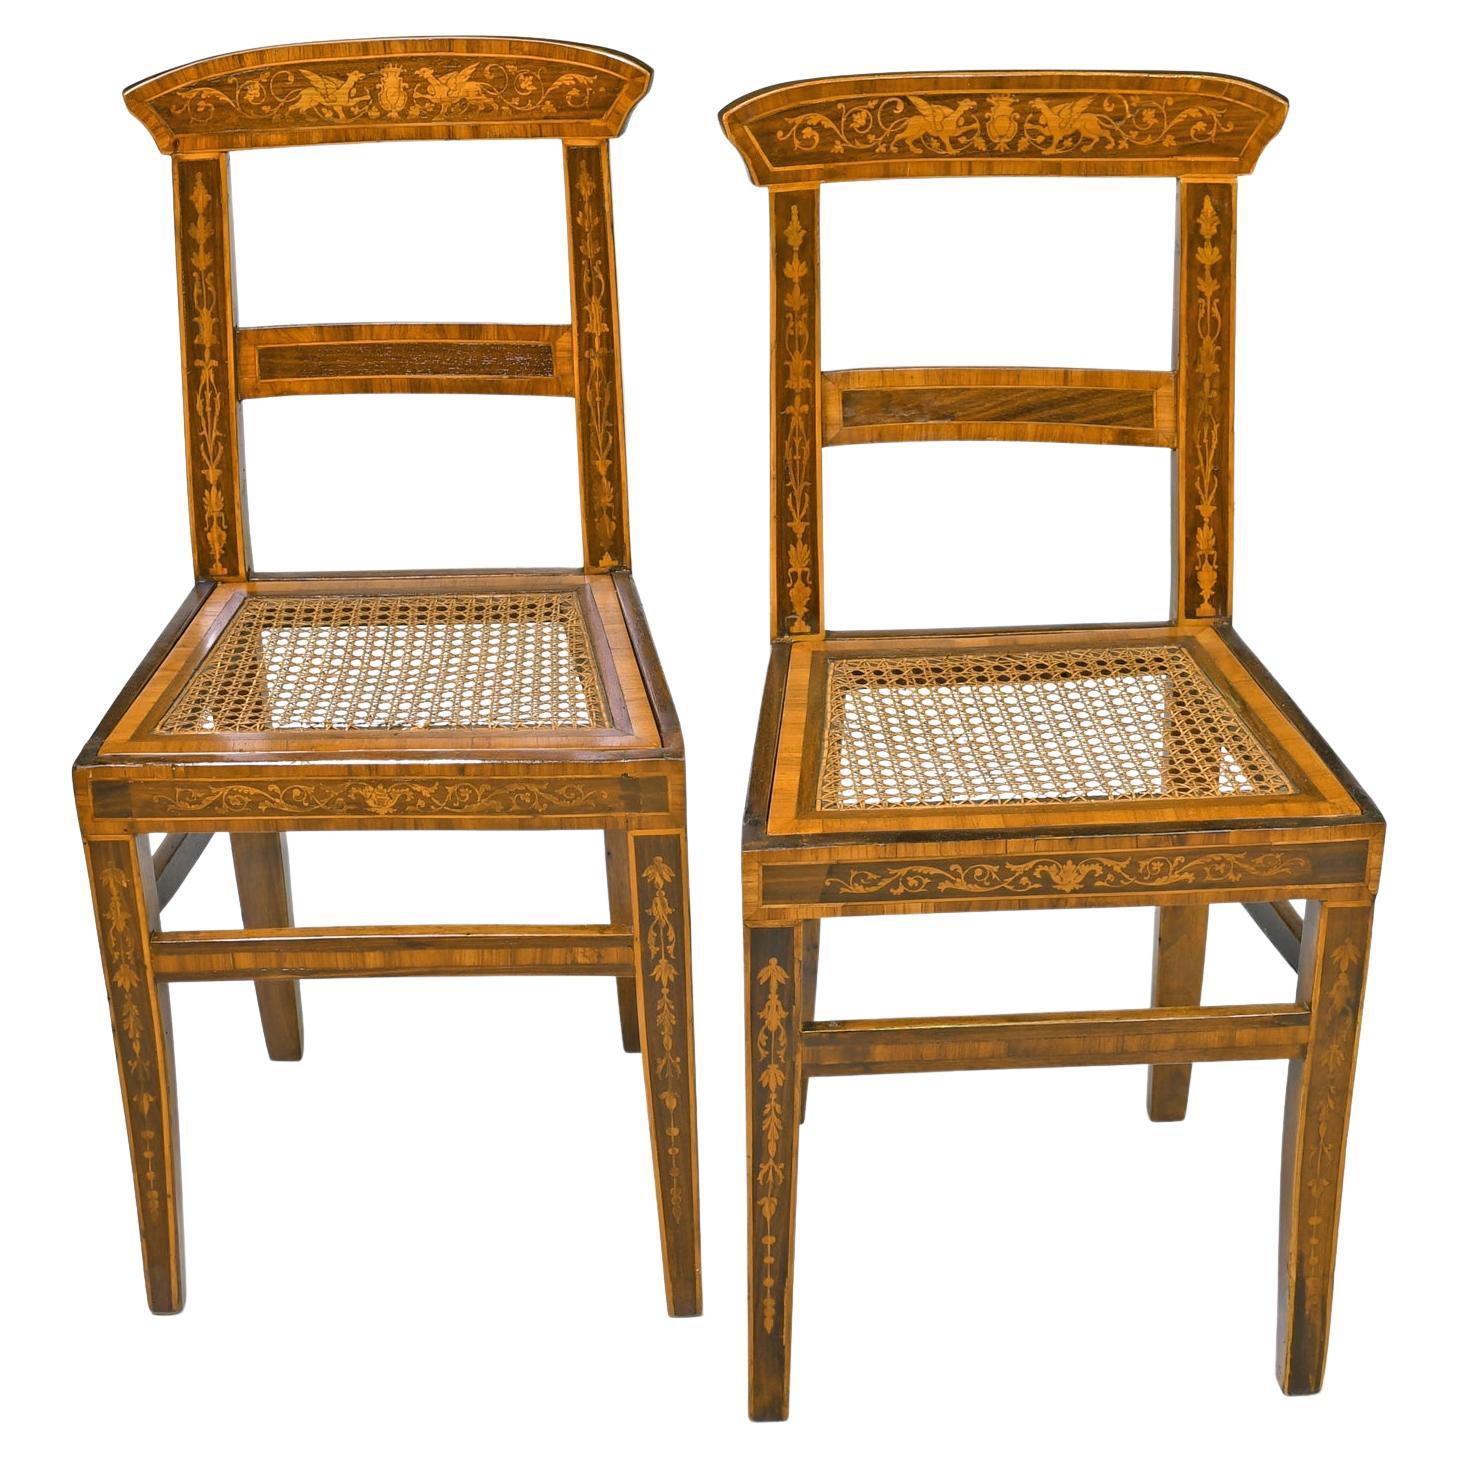 Paire d'anciennes chaises d'appoint de style Régence anglaise avec marqueterie et assise cannée